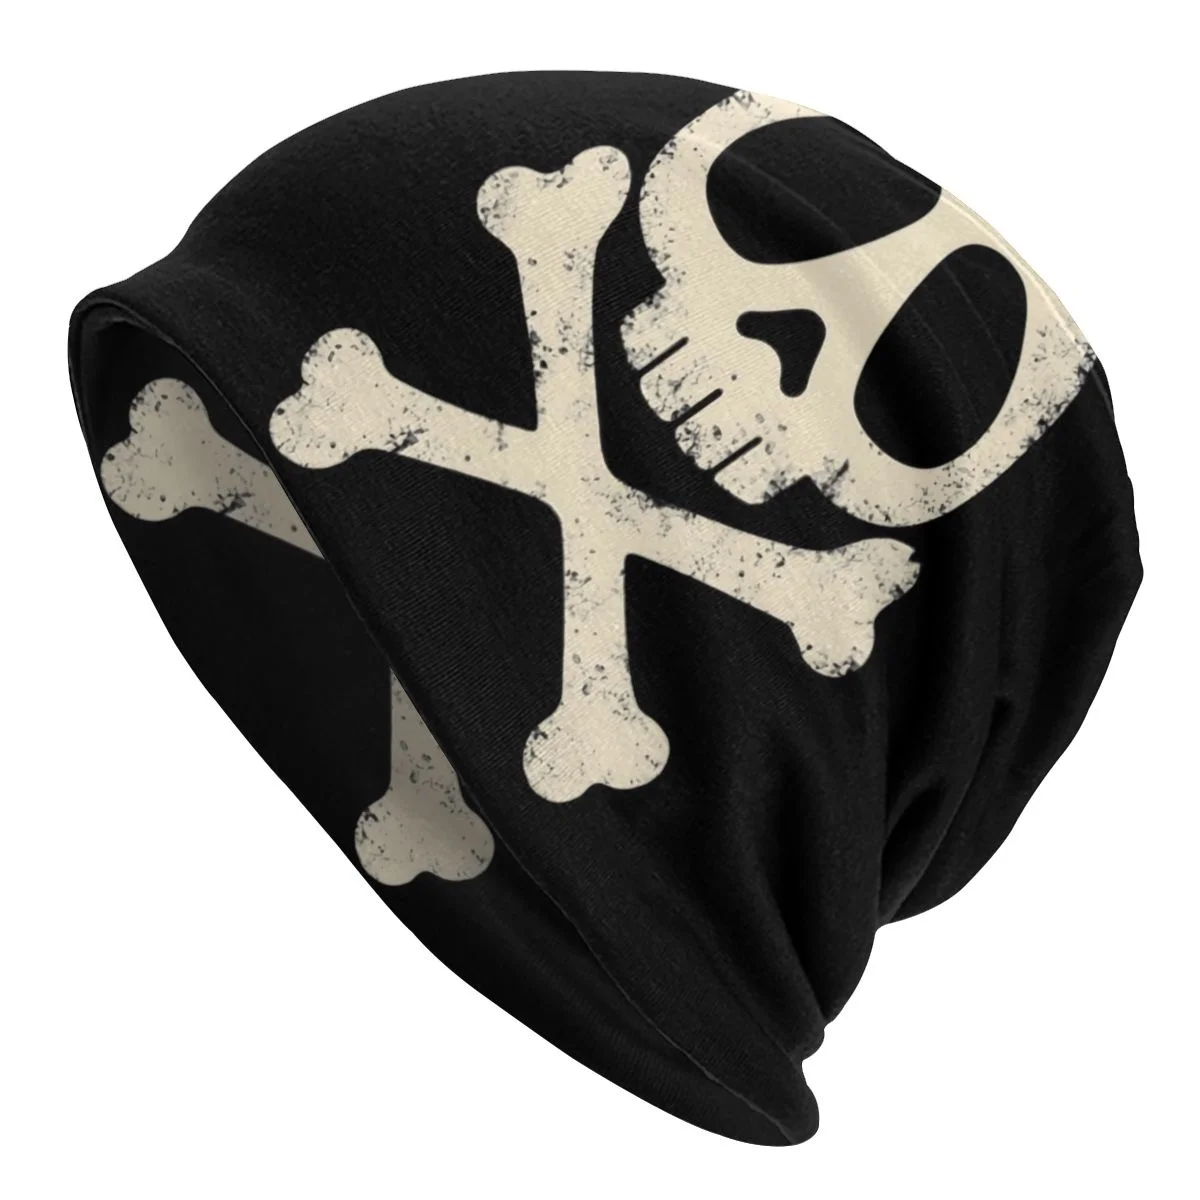 

arlock Vintae 3d Print Beanies Caps Men Women Unisex Cool Winter Warm Knitted at Adult Skull Skeleton Bonnet ats